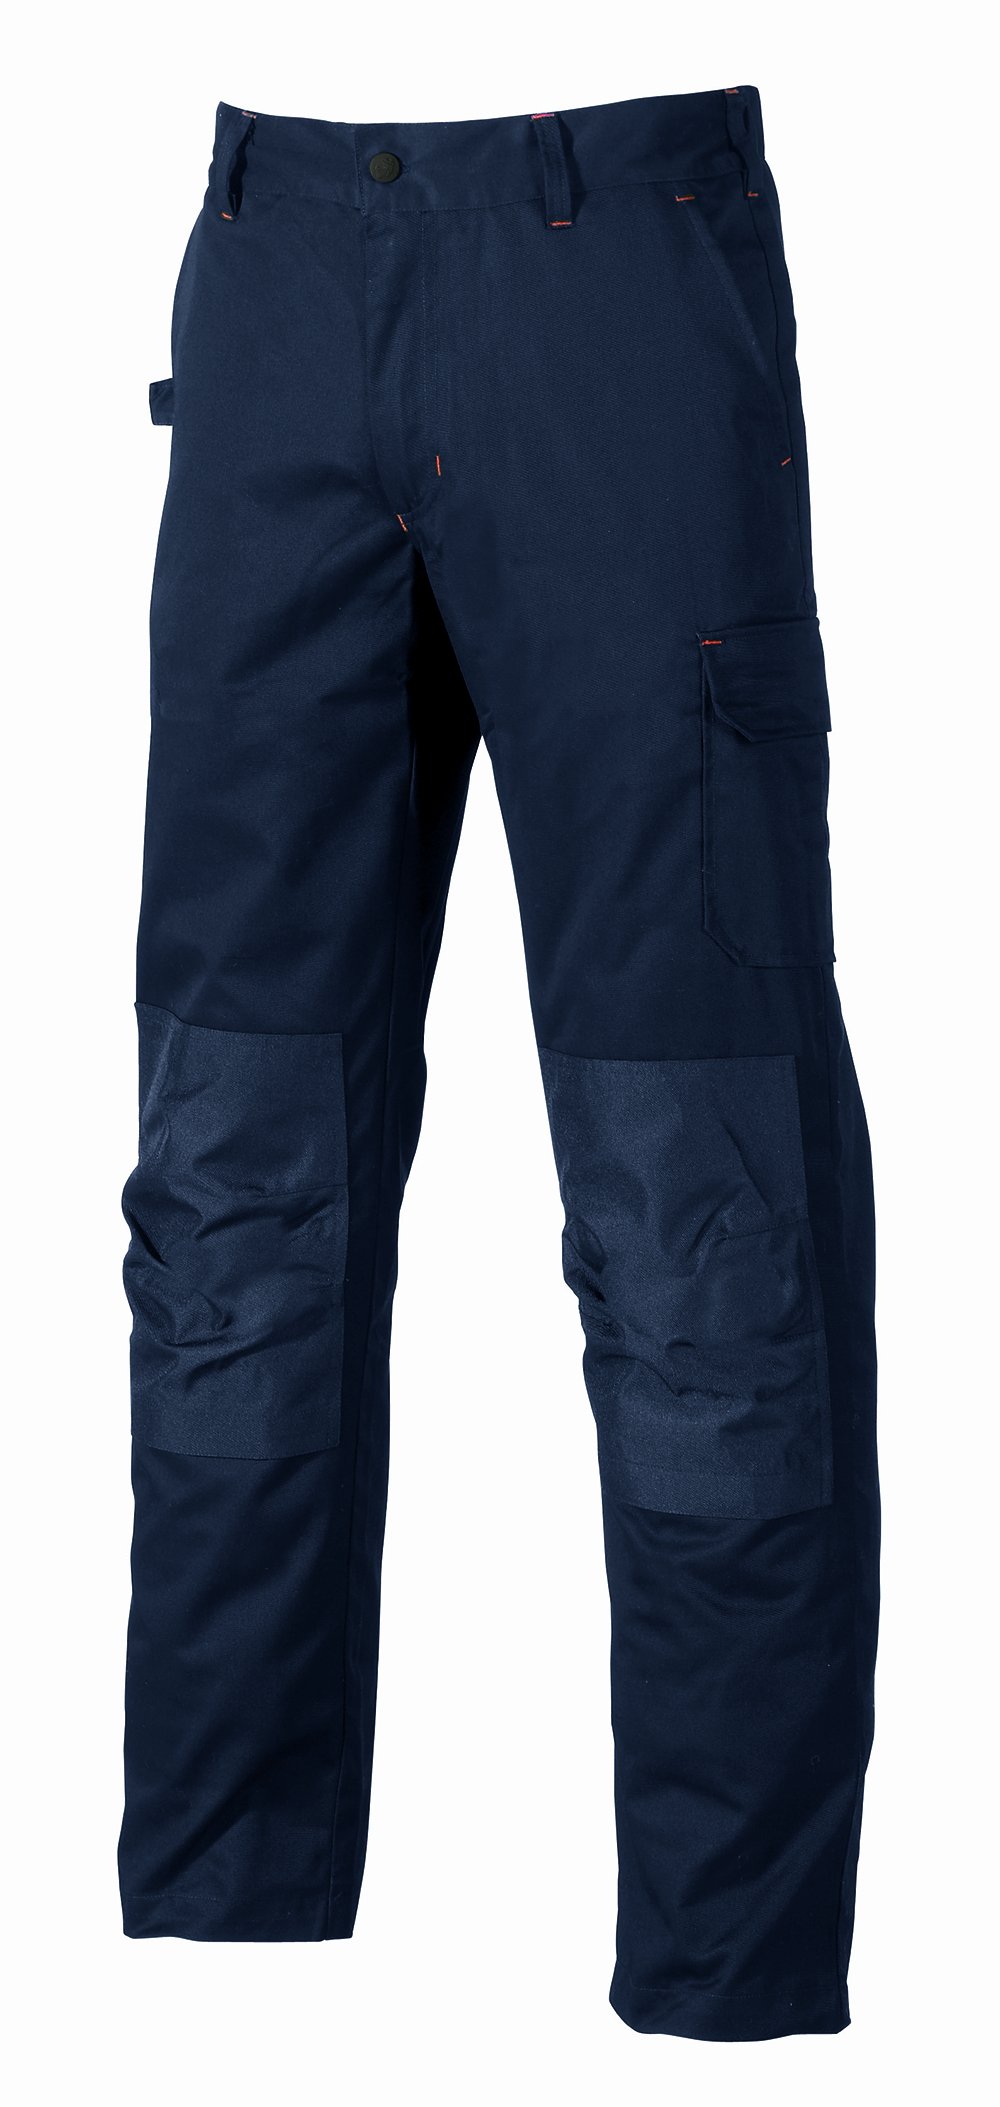 Pantalone da lavoro lungo alfa col.blu scuro tg.54